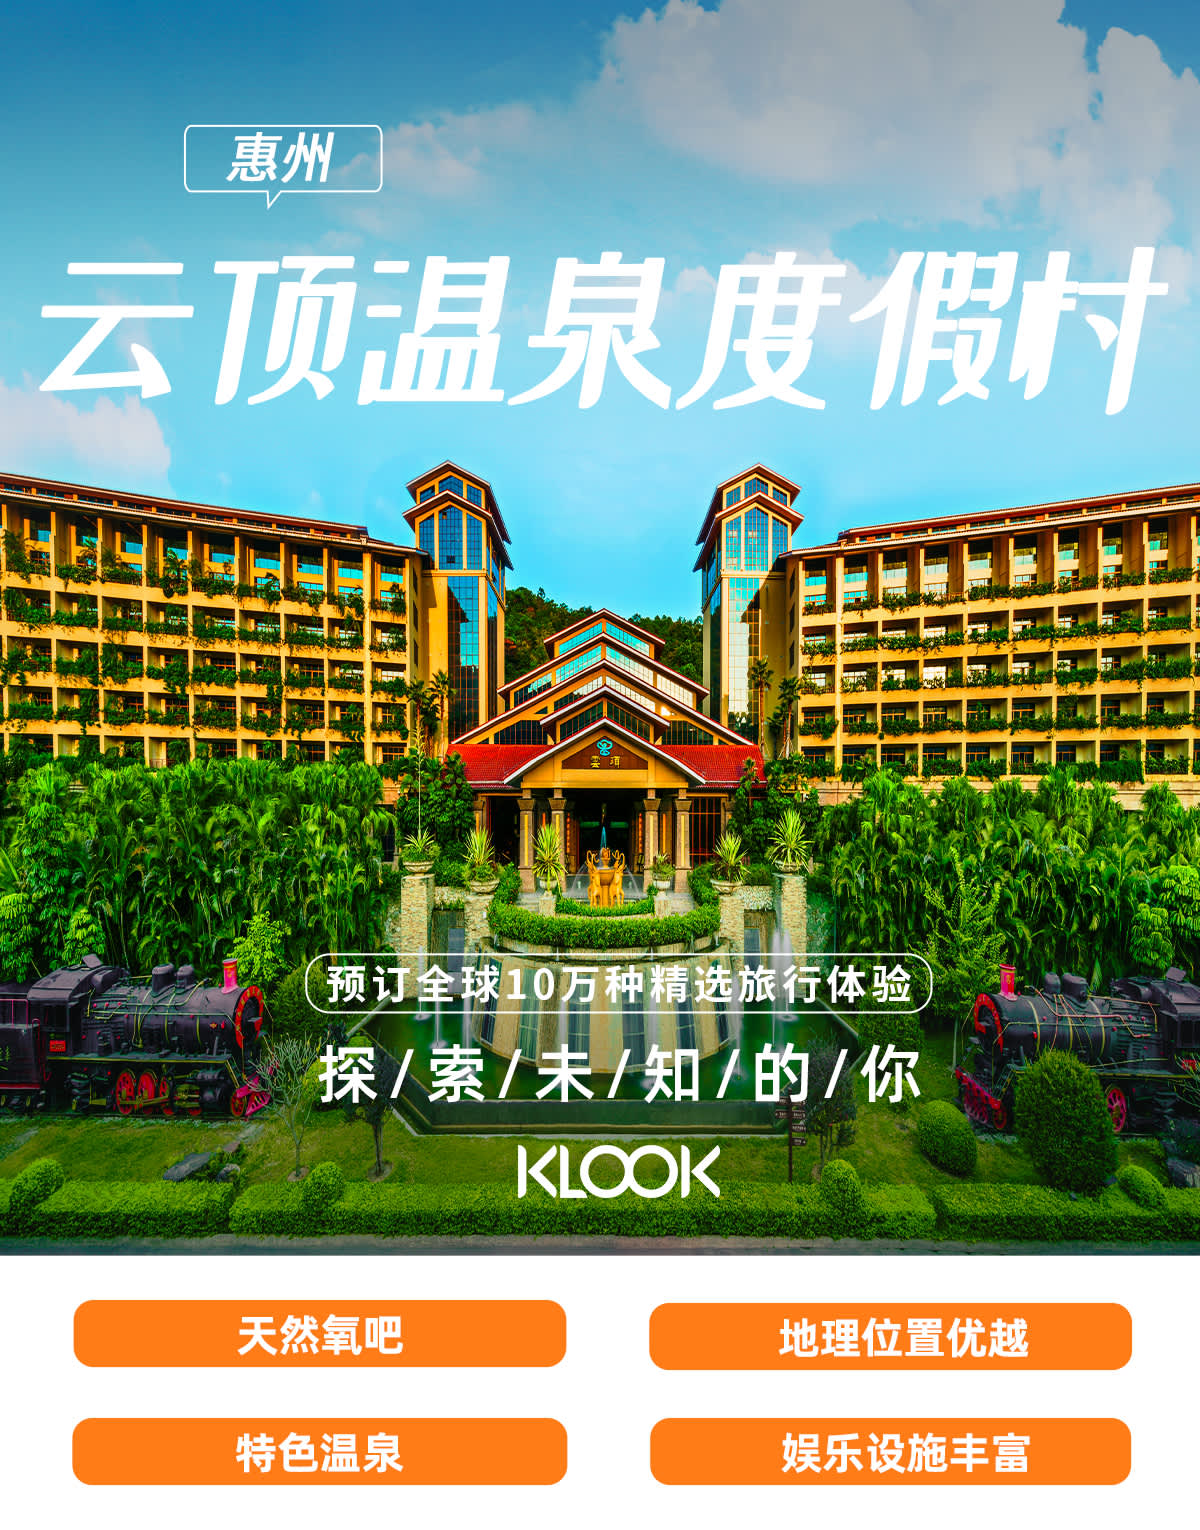 Nankunshan Yunding Hot Spring Resort Klook